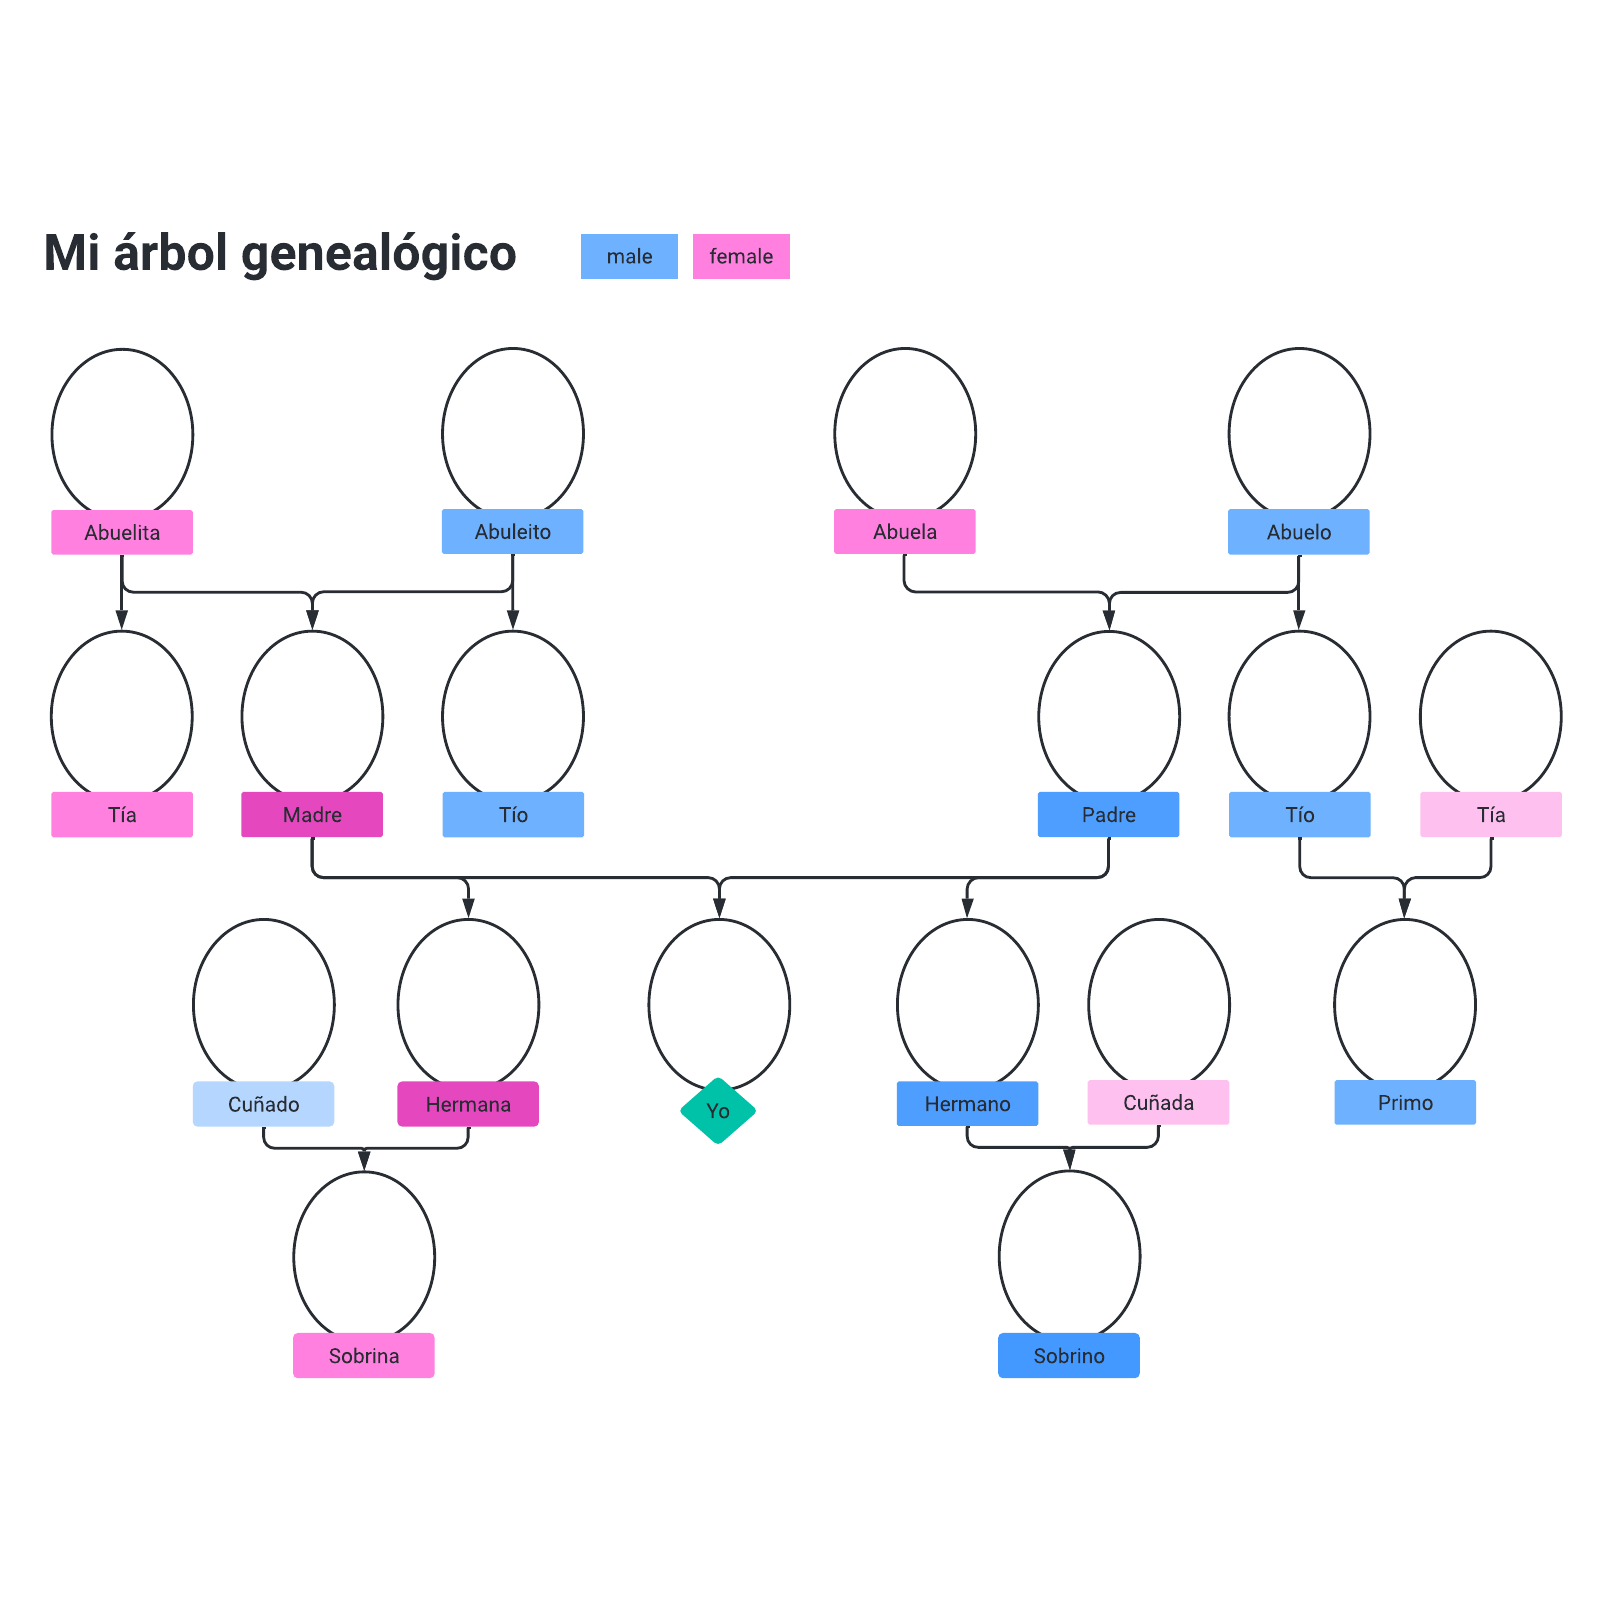 Spanish family tree example